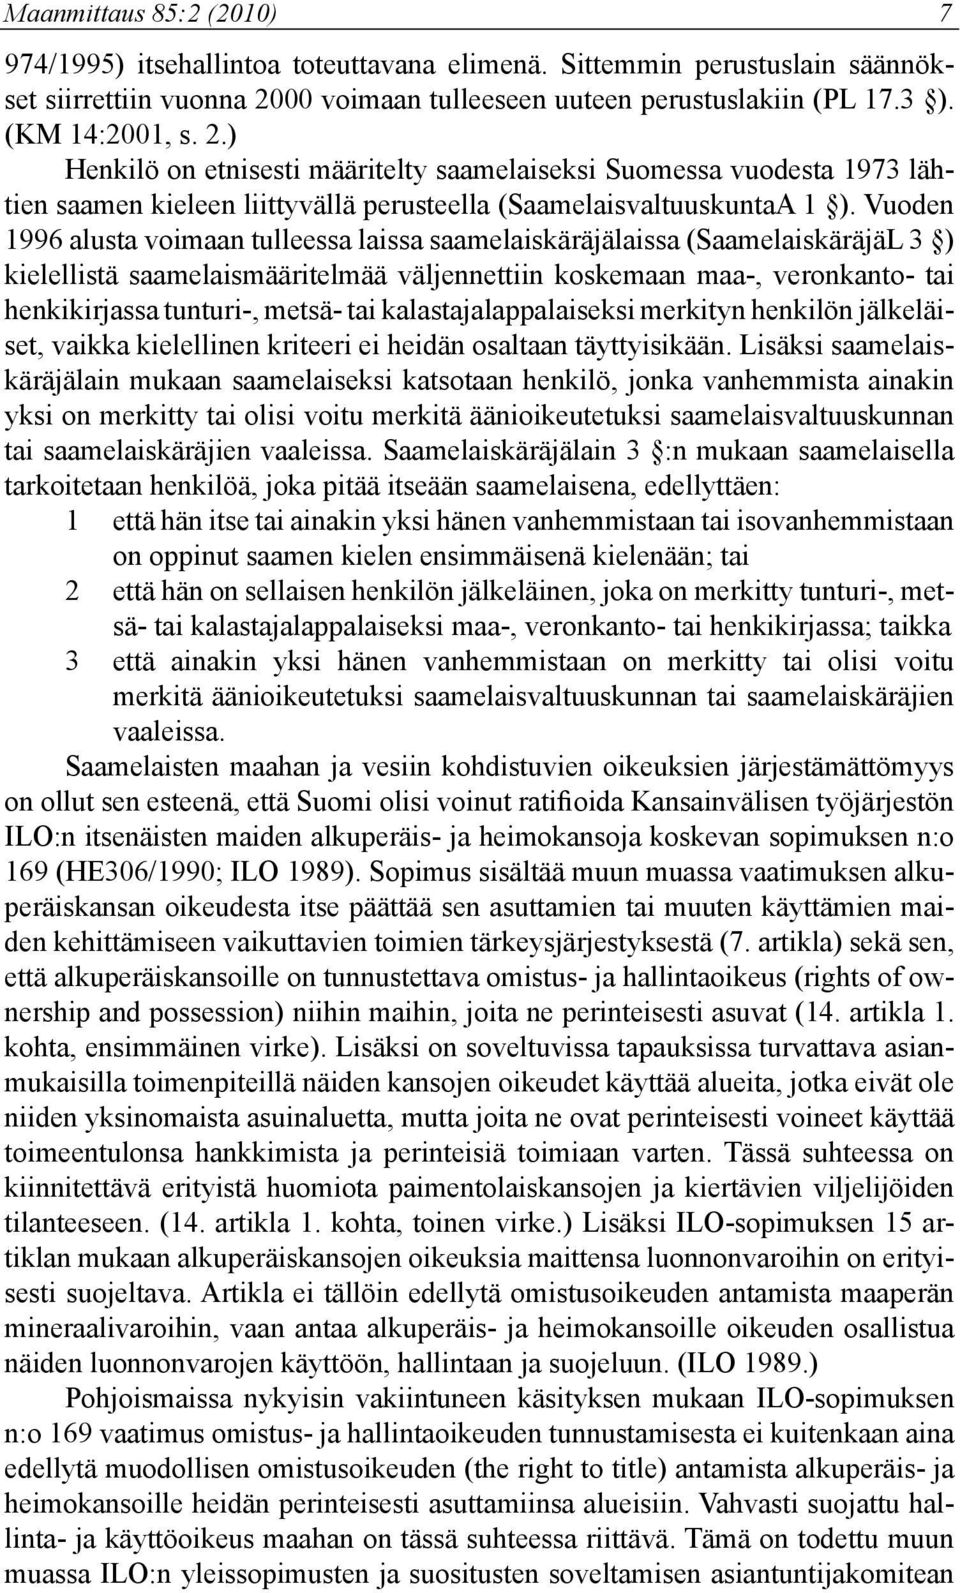 Vuoden 1996 alusta voimaan tulleessa laissa saamelaiskäräjälaissa (SaamelaiskäräjäL 3 ) kielellistä saamelaismääritelmää väljennettiin koskemaan maa-, veronkanto- tai henkikirjassa tunturi-, metsä-